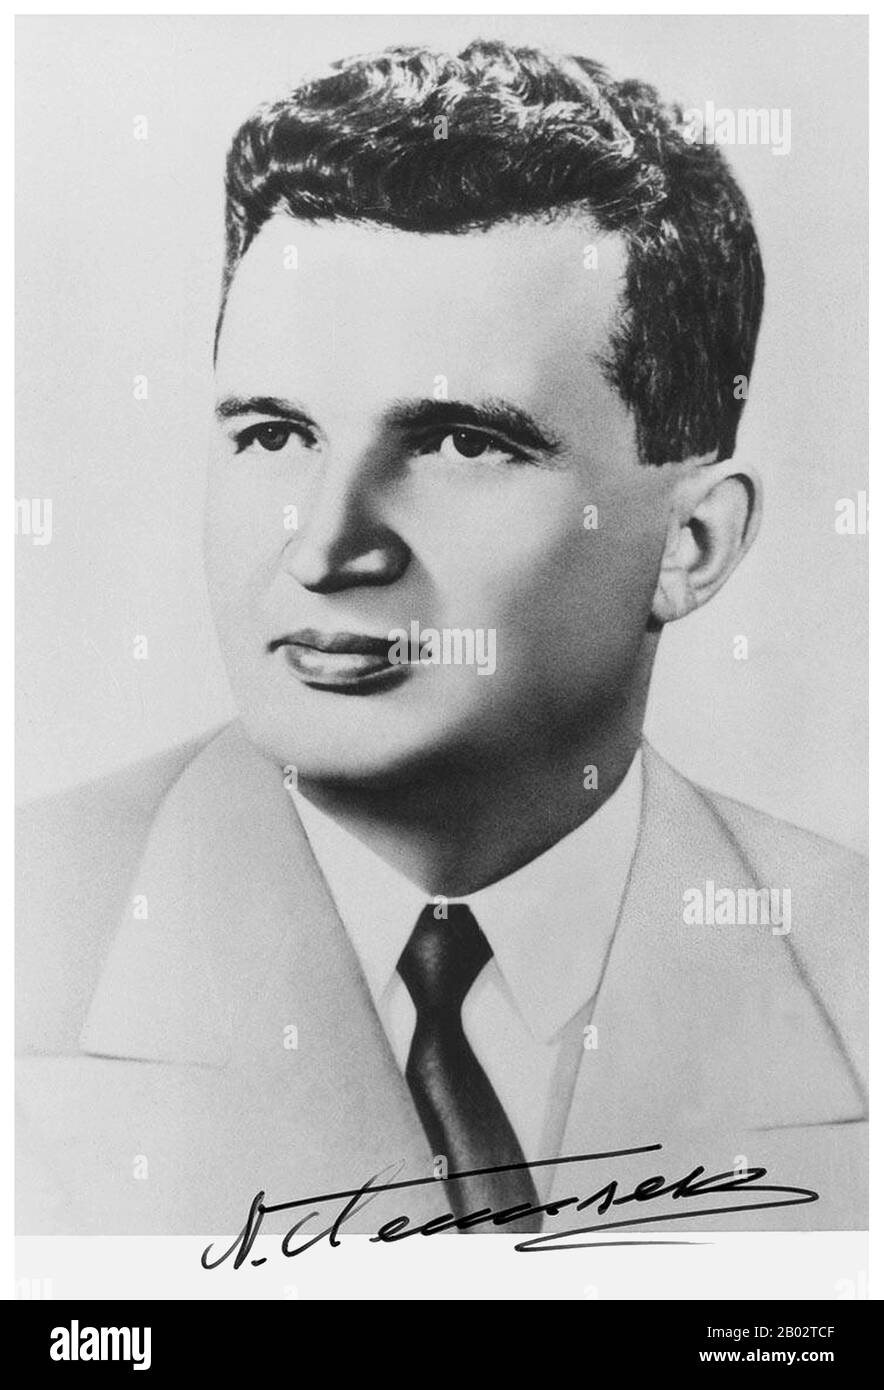 Nicolae Ceausescu (26 janvier 1918 – 25 décembre 1989) était un politicien communiste roumain. Il a été secrétaire général du Parti communiste roumain de 1965 à 1989 et, à ce titre, le deuxième et dernier leader communiste du pays. Il a également été le chef de l'État du pays de 1967 à 1989. Ceausescu a visité la Chine, la Corée du Nord, la République Populaire de Mongolie et le Vietnam du Nord en 1971. Il s'est beaucoup intéressé à l'idée d'une transformation nationale totale telle qu'elle est incarnée dans les programmes de la Juche de la Corée du Nord et de la Révolution culturelle de la Chine. Il a également été inspiré par les cultes de la personnalité de North Kore Banque D'Images